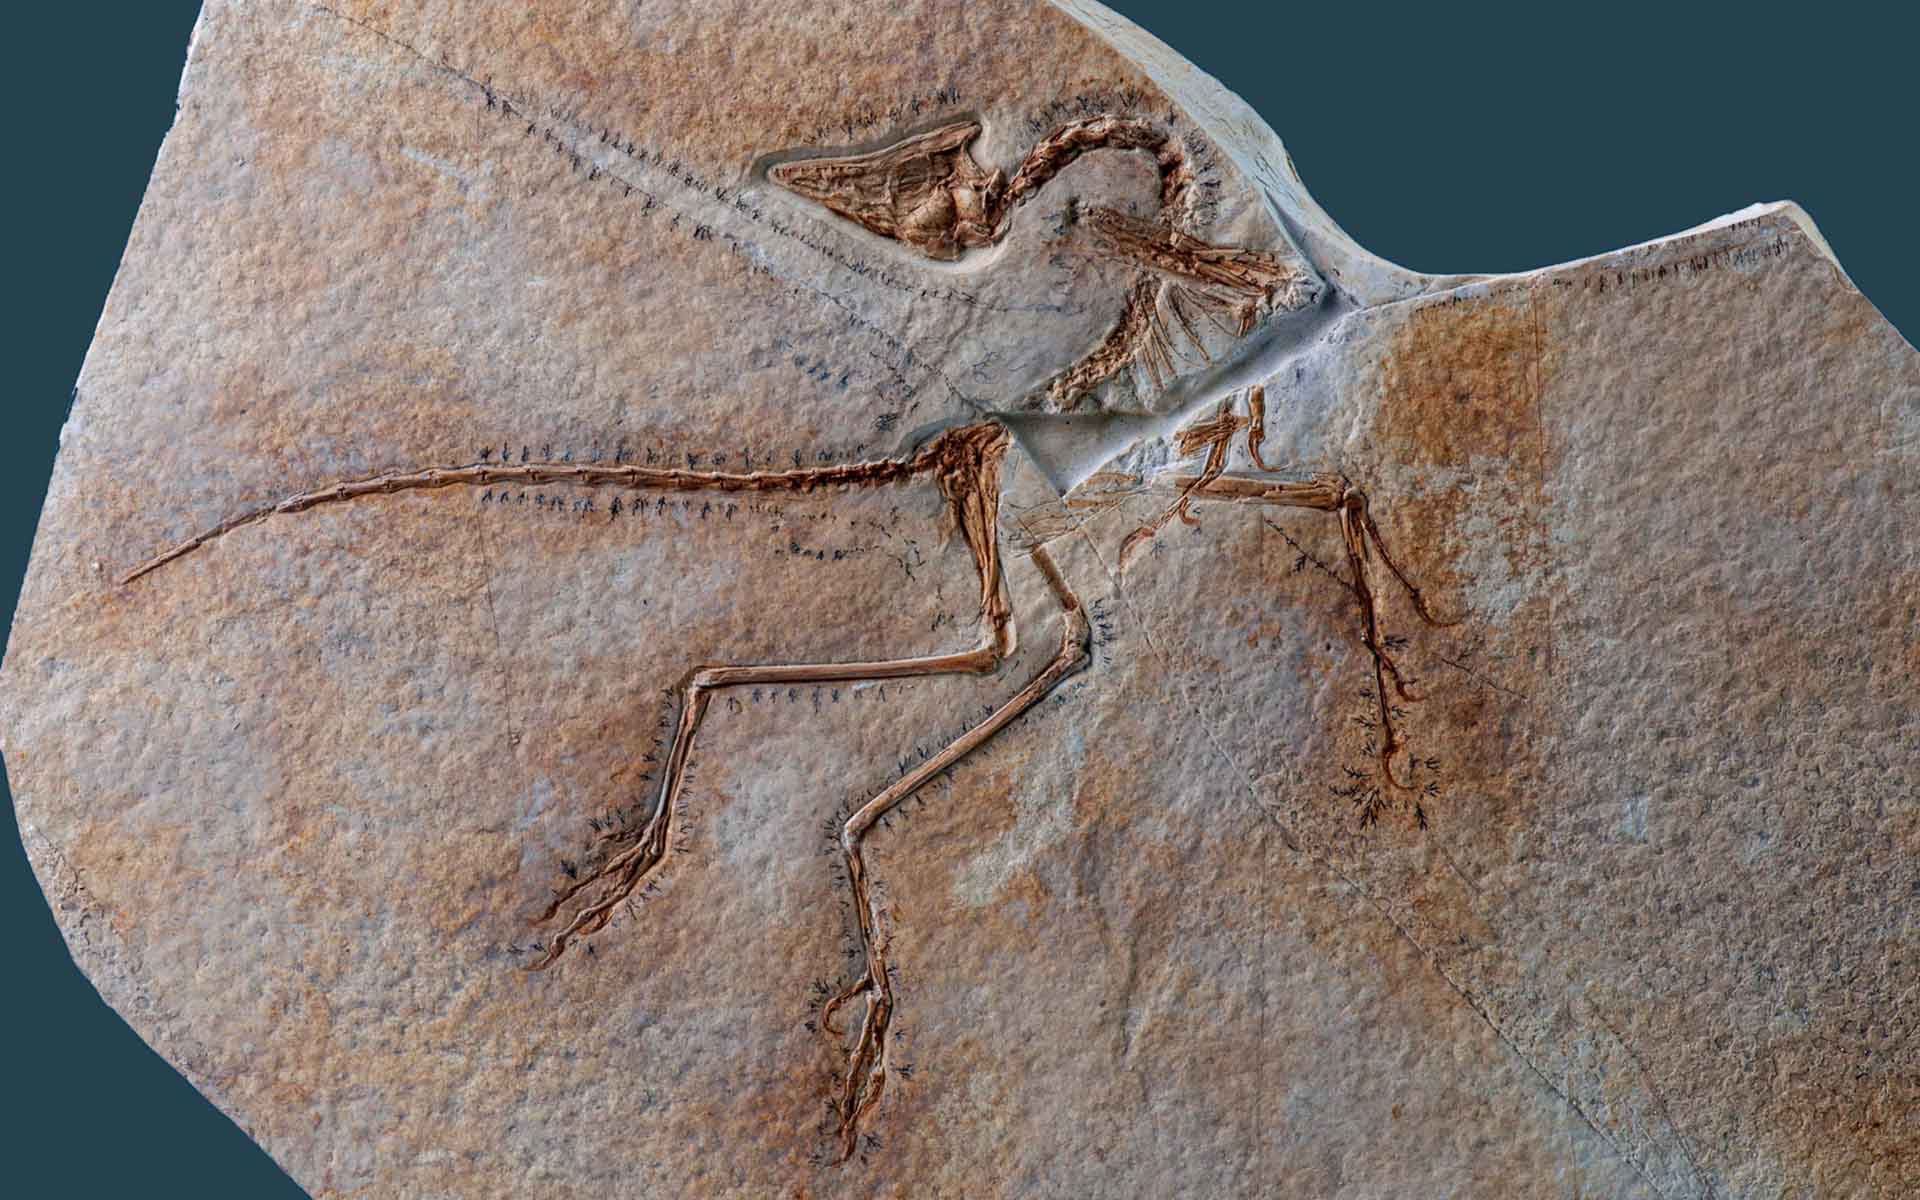 The “Eichstätt specimen” of Archaeopteryx